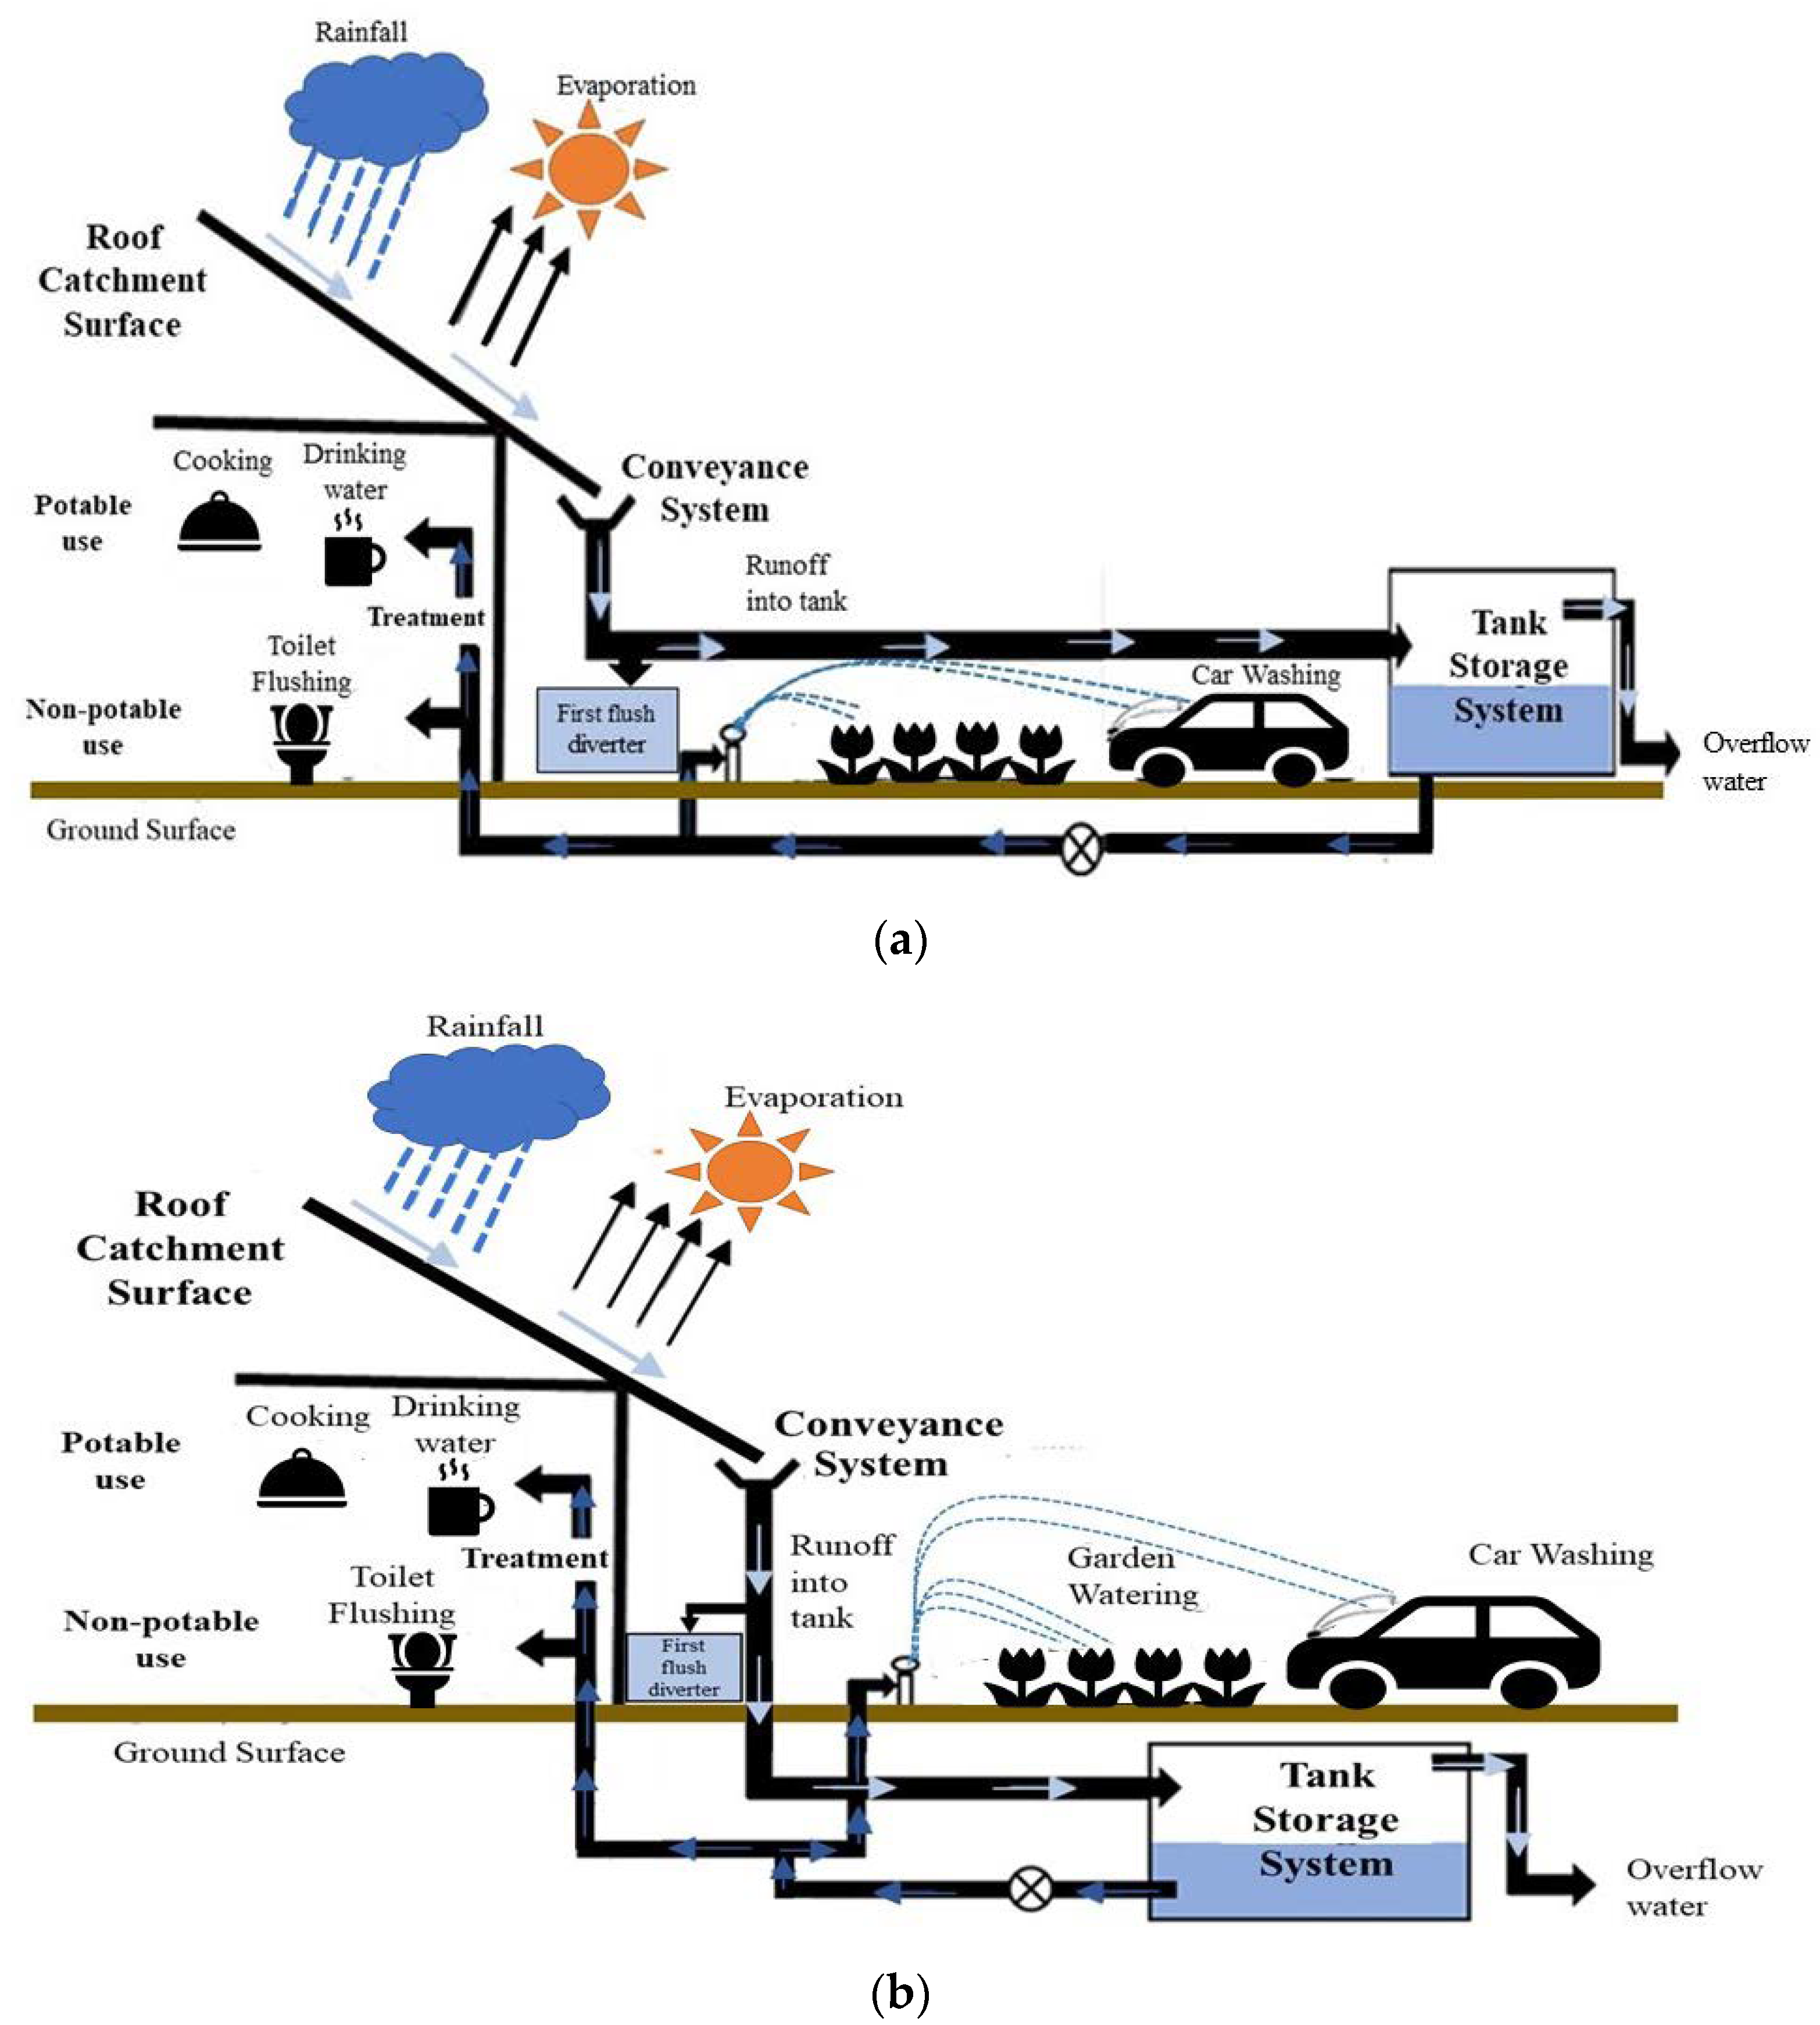 rainwater-harvesting-diagram